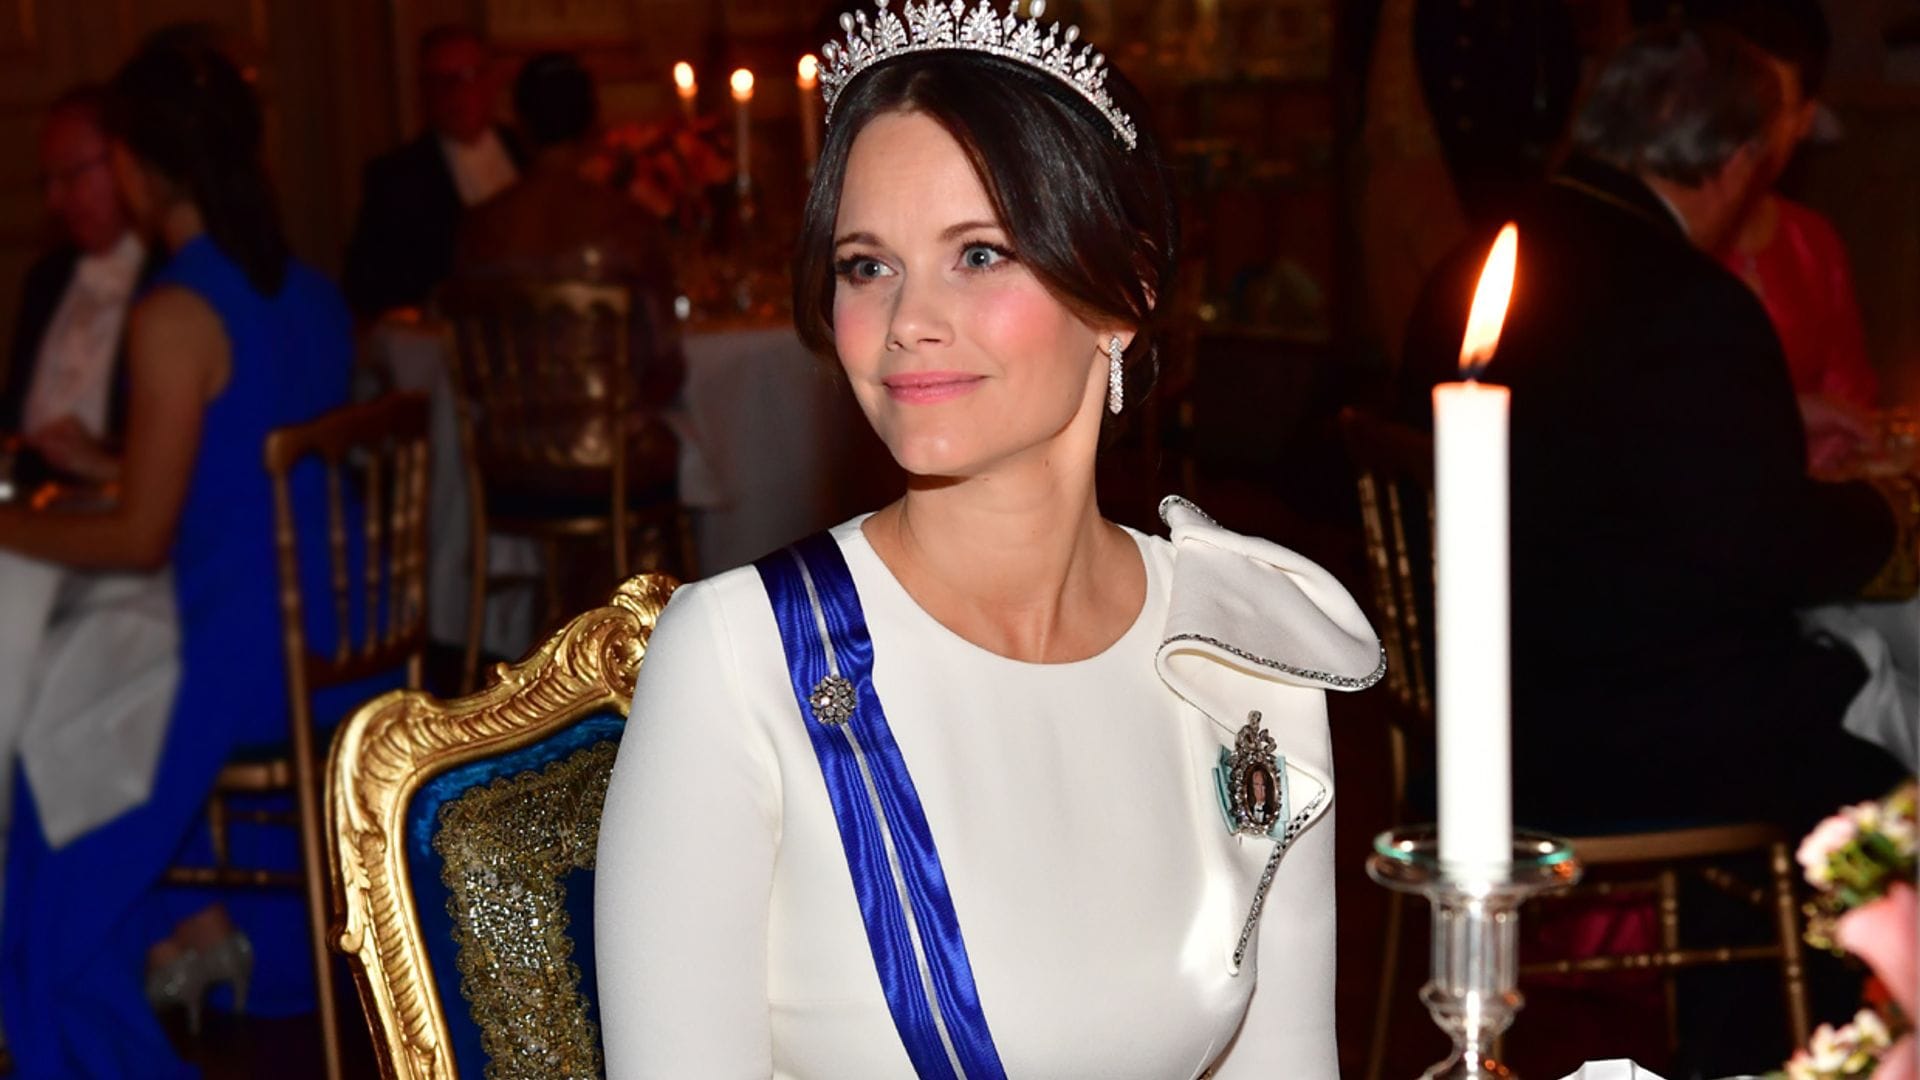 Repasamos los looks de gala más espectaculares de Sofia de Suecia por su cumpleaños